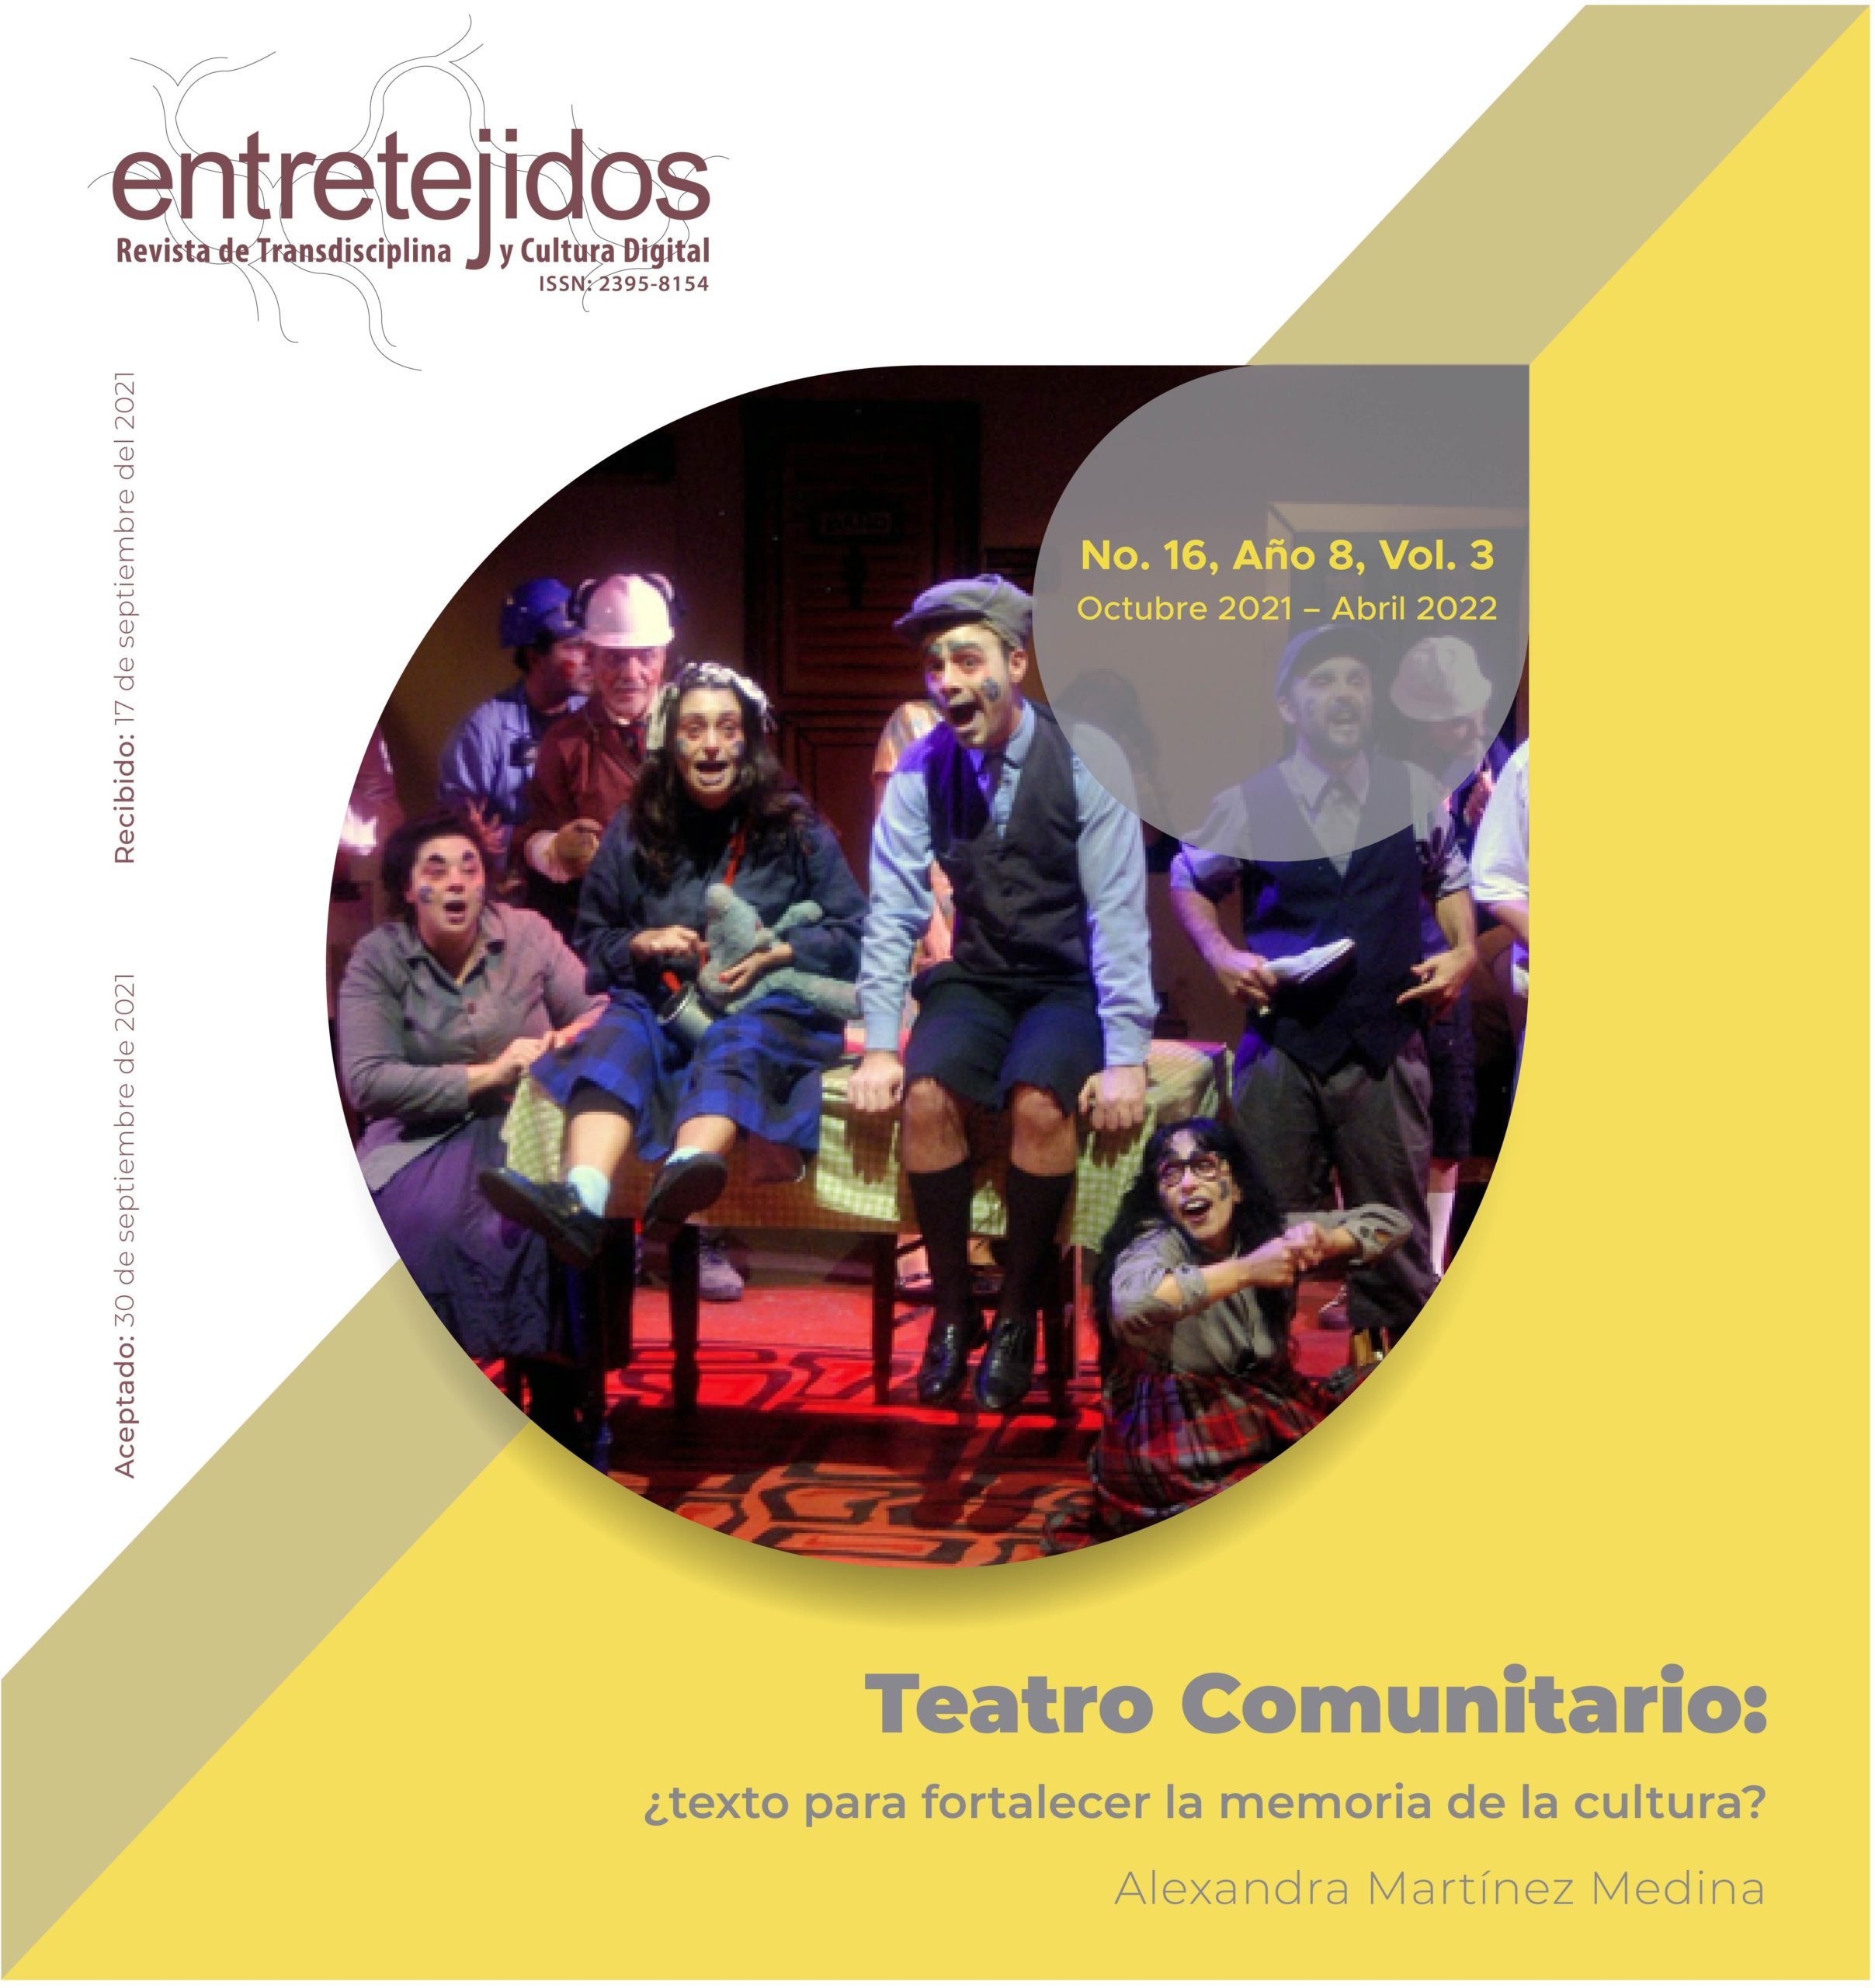 Teatro Comunitario: ¿texto para fortalecer la memoria de la cultura?